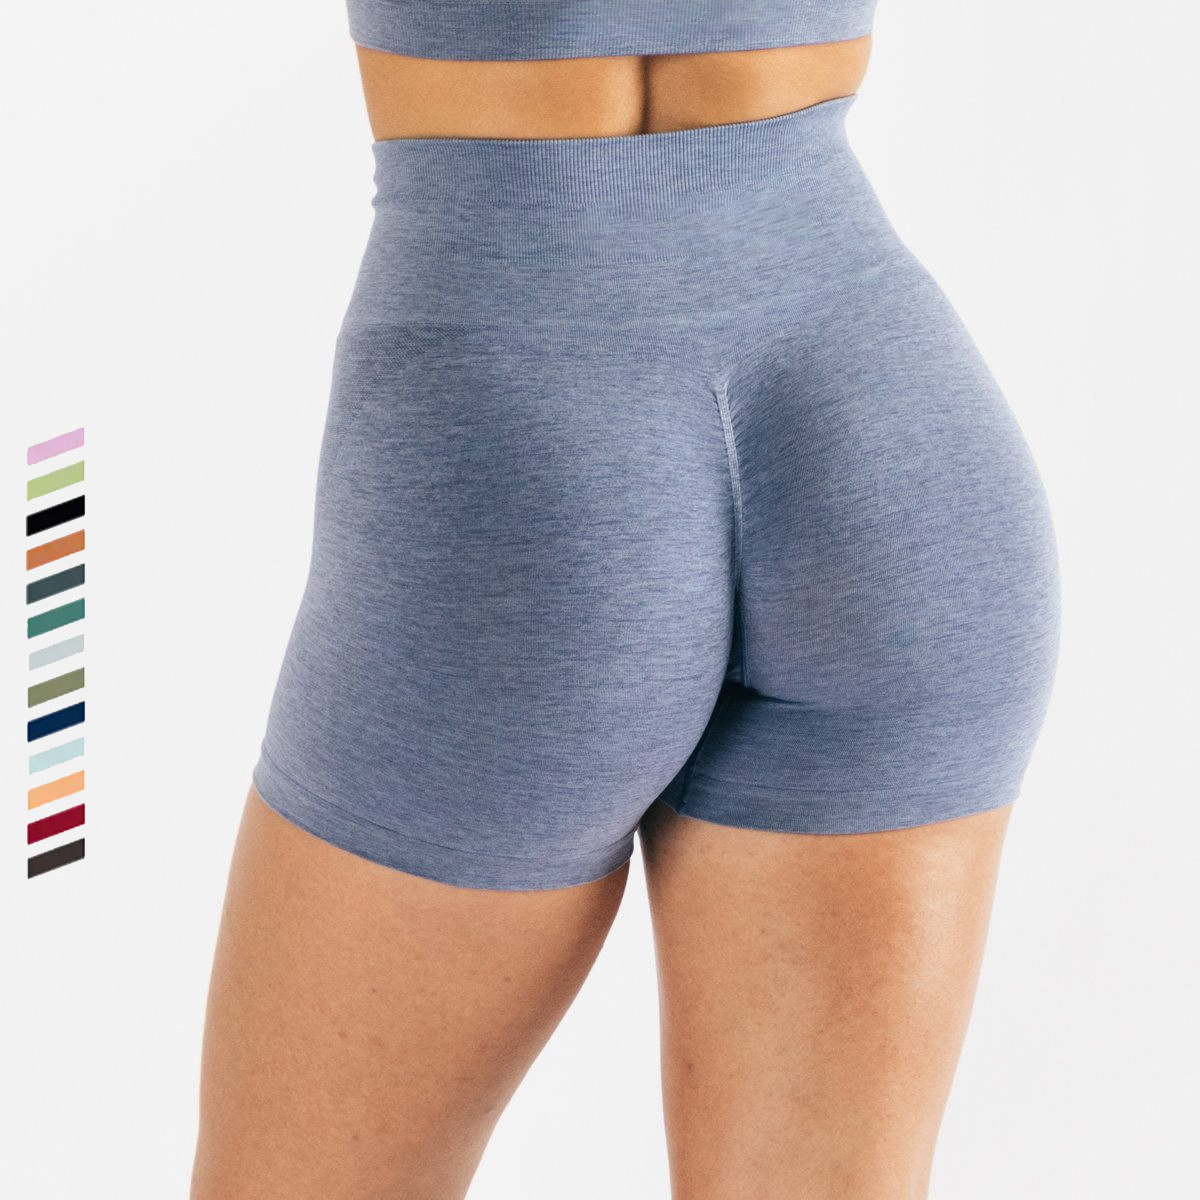 ខោខ្លី Yoga Short Waist Sports 23 Colors Shorts Seamless Active Wear